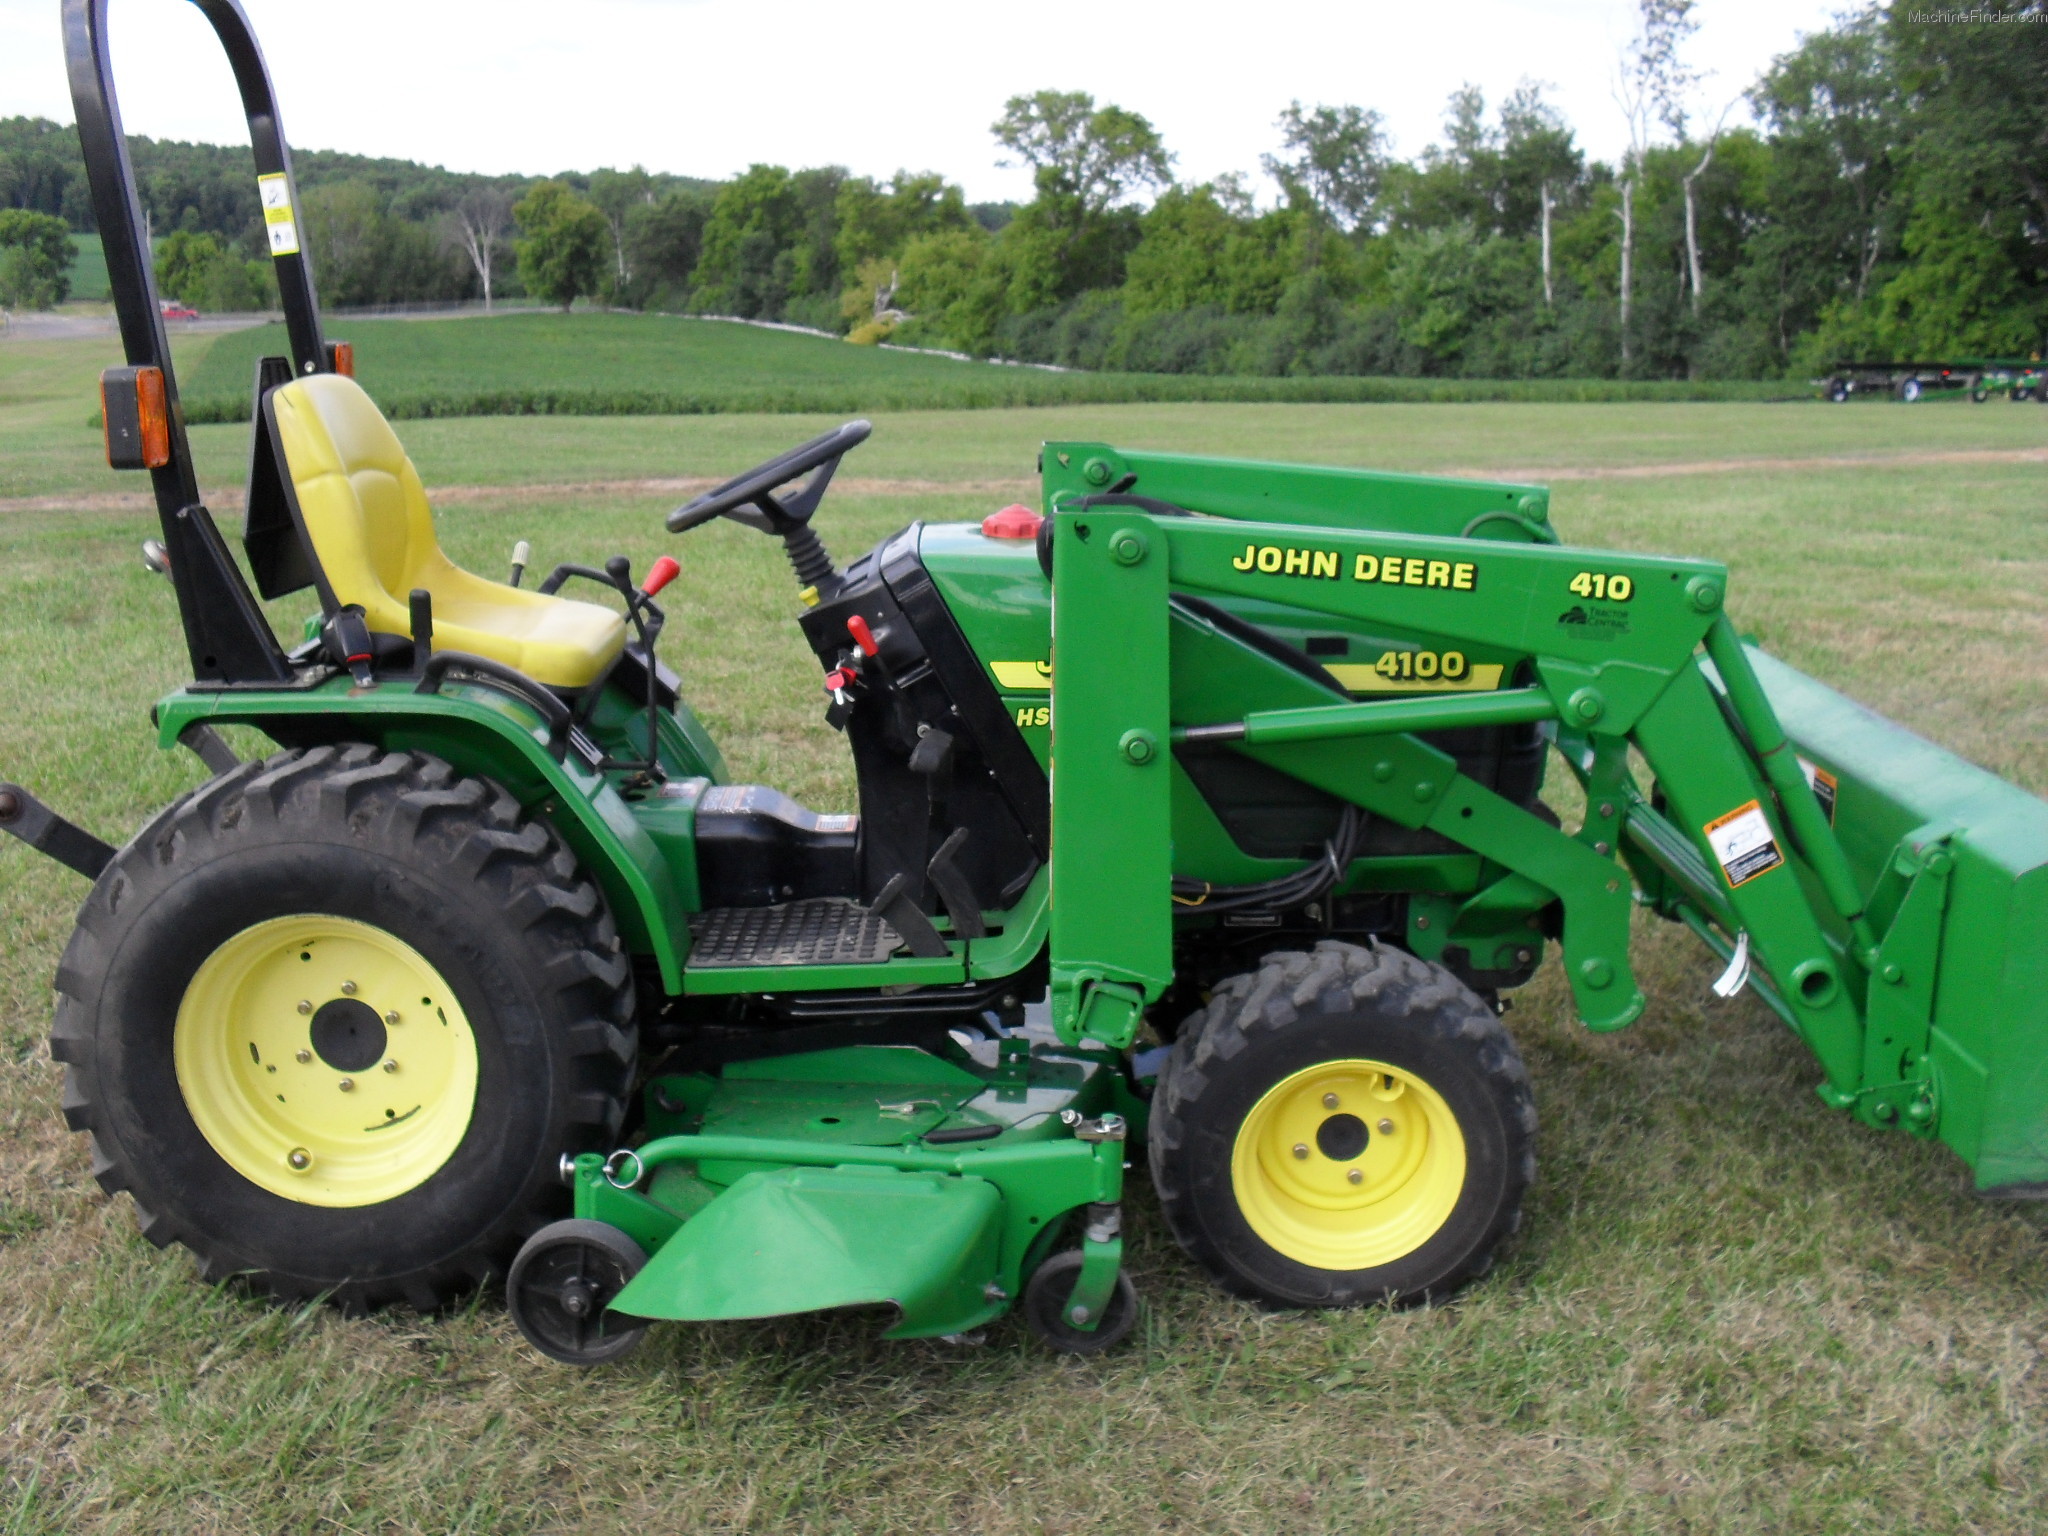 2001 John Deere 4100 Tractors - Compact (1-40hp.) - John Deere ...